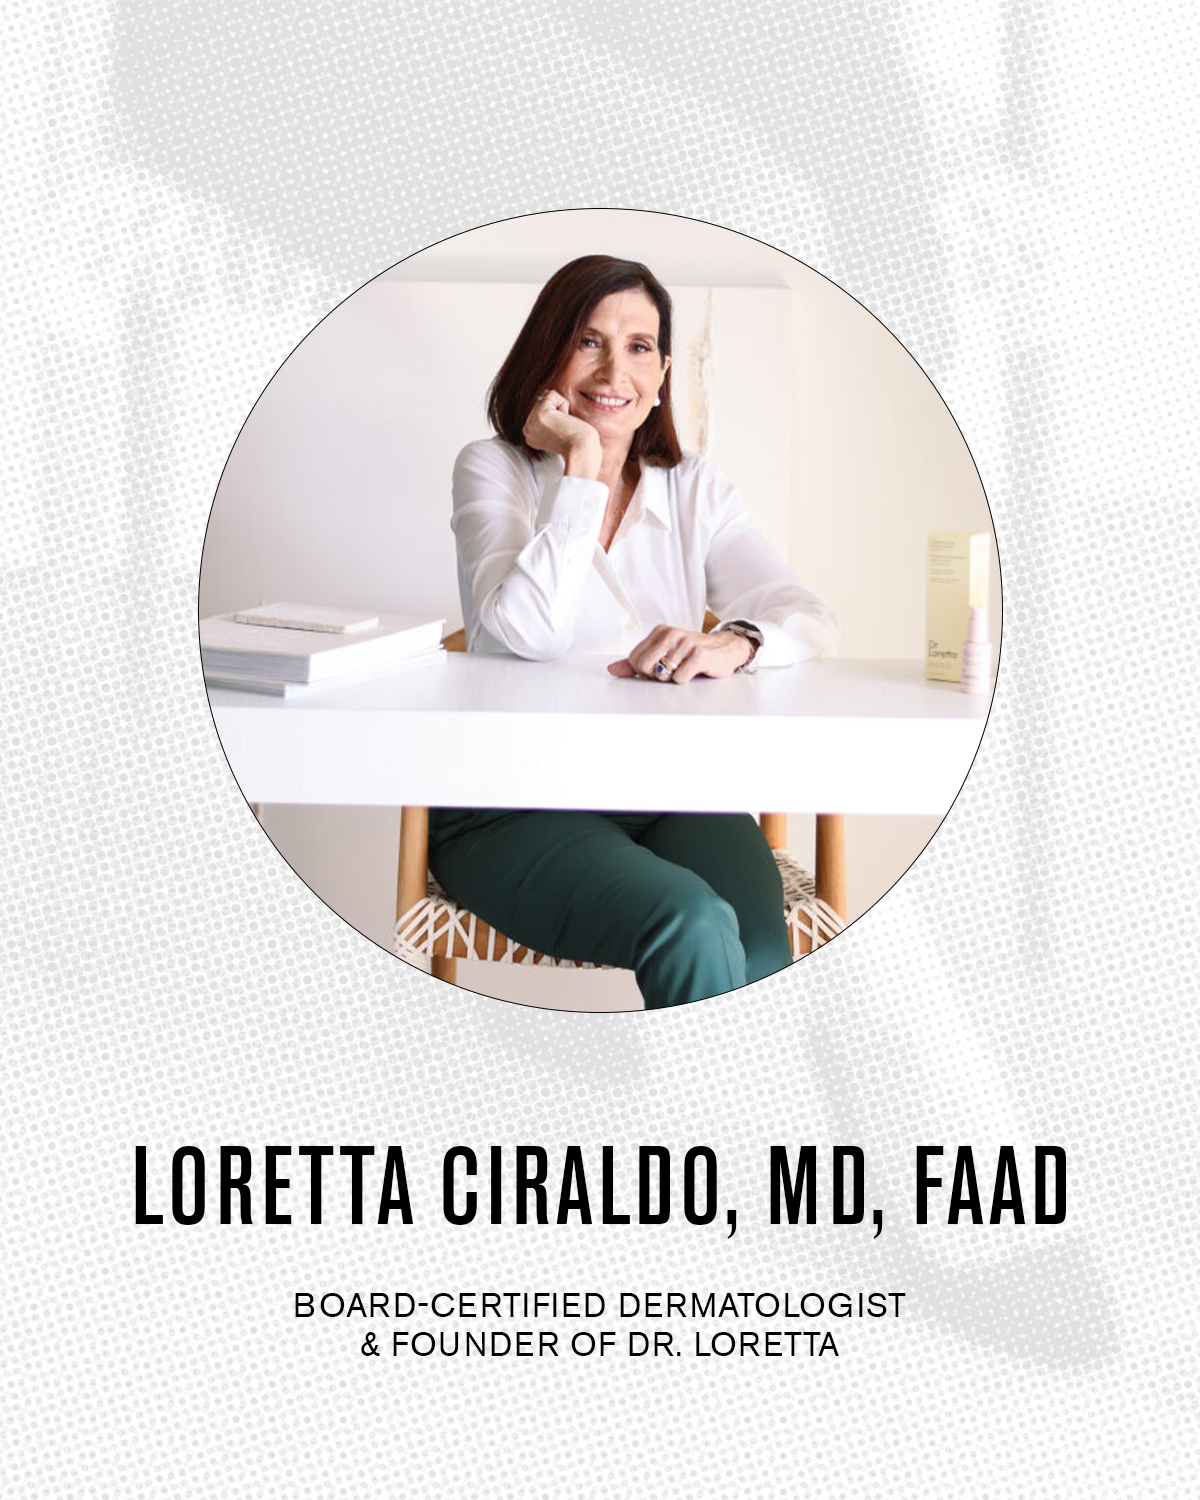 Dr. Loretta Ciraldo